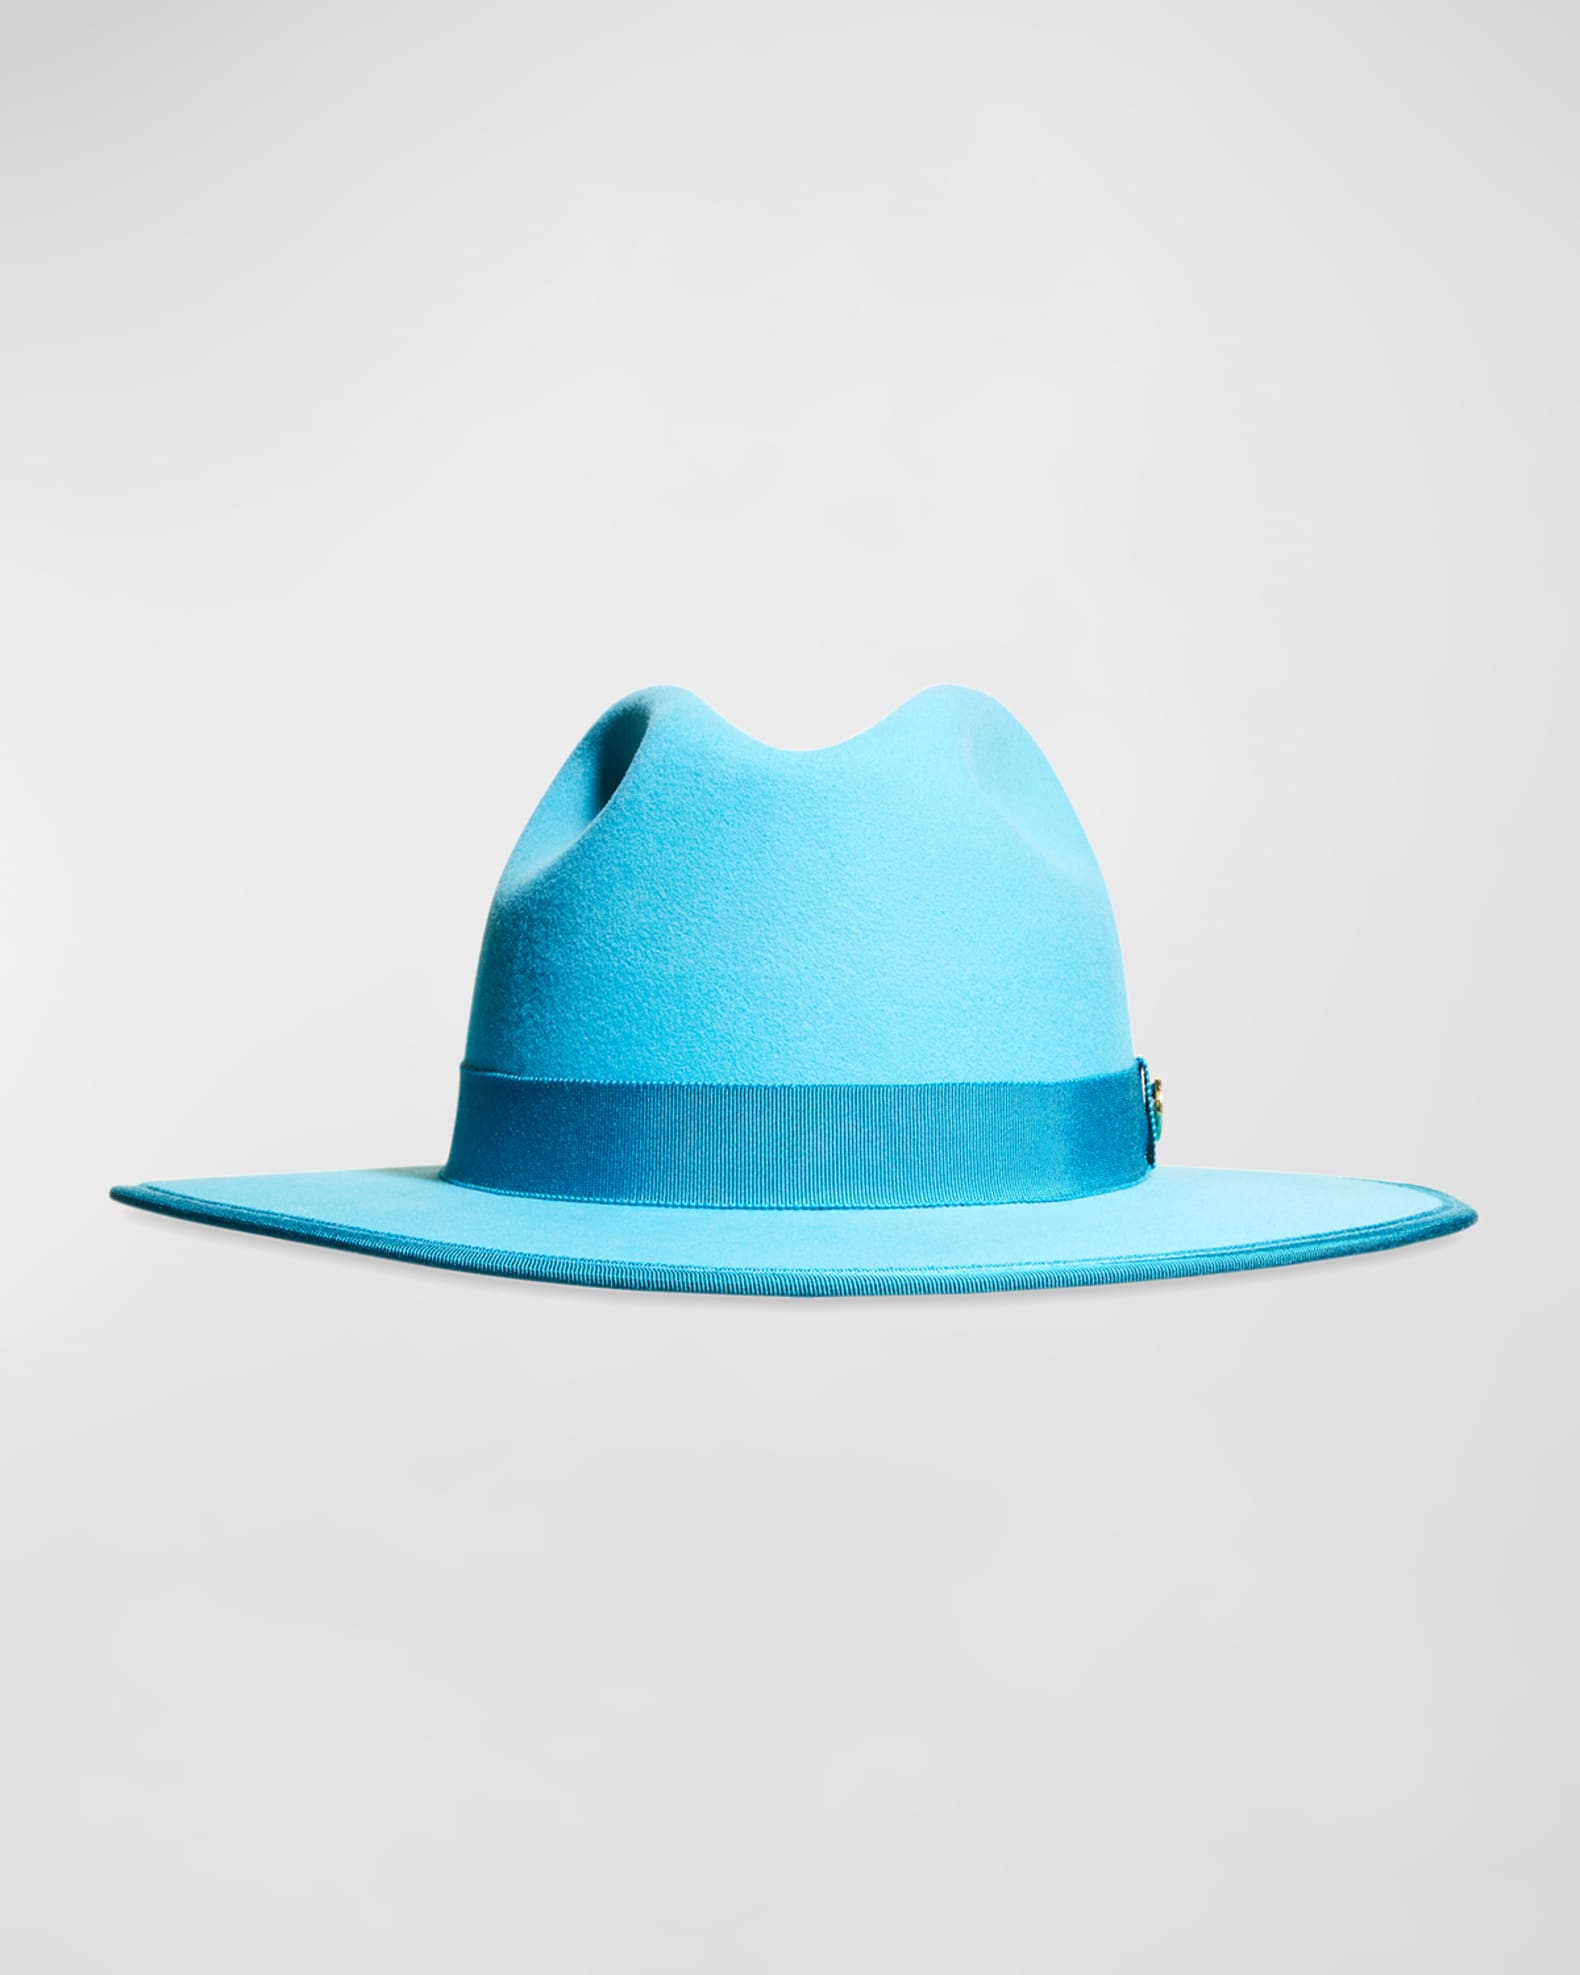 Shop FENDI Unisex Street Style Bucket Hats Wide-brimmed Hats by